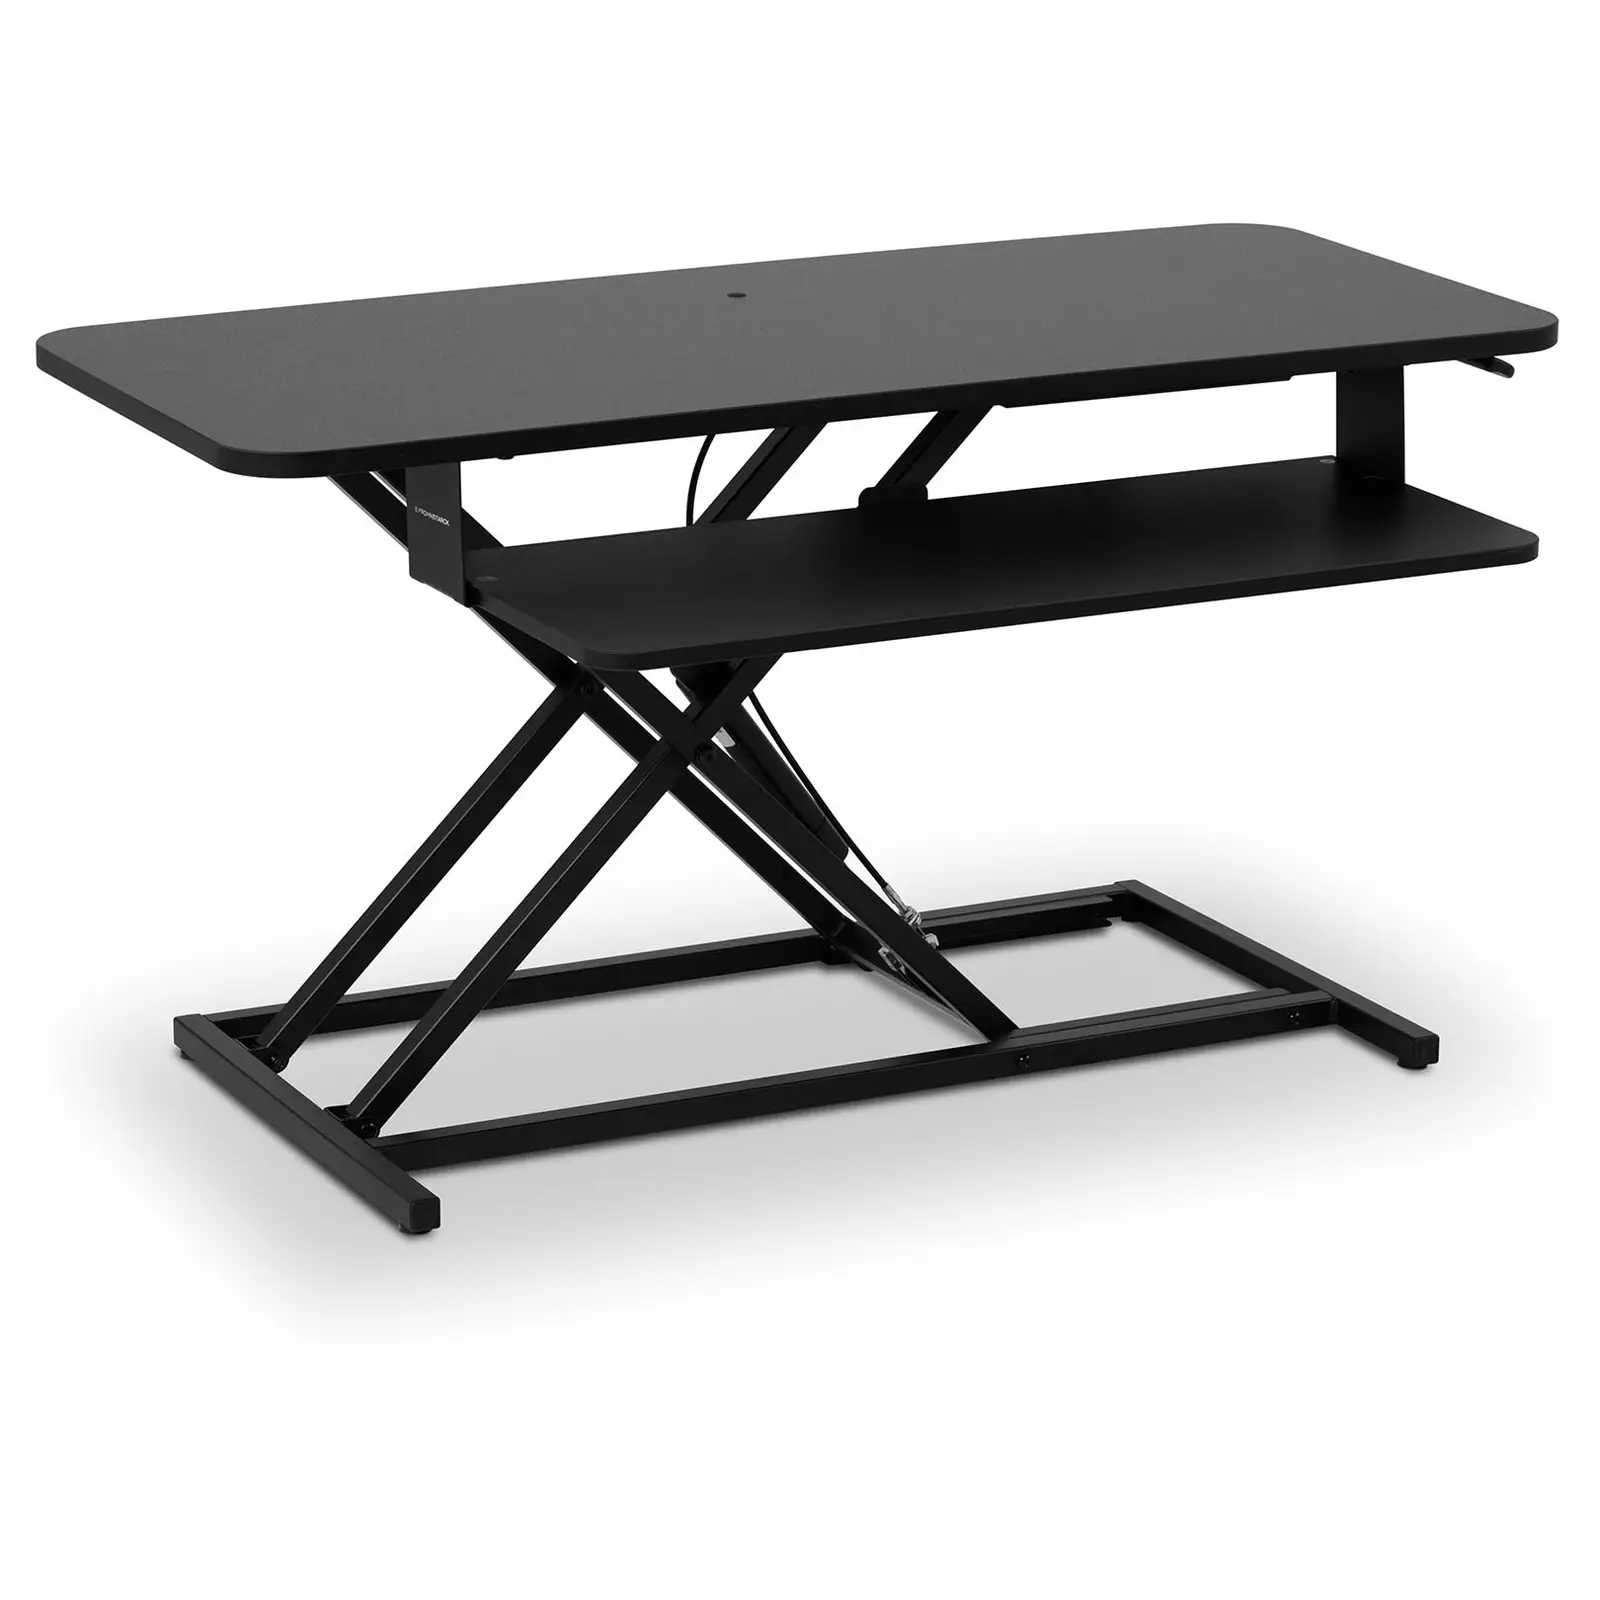 Schreibtischaufsatz - Sitz-Steh-Erhöhung - höhenverstellbar 115 - 500 mm